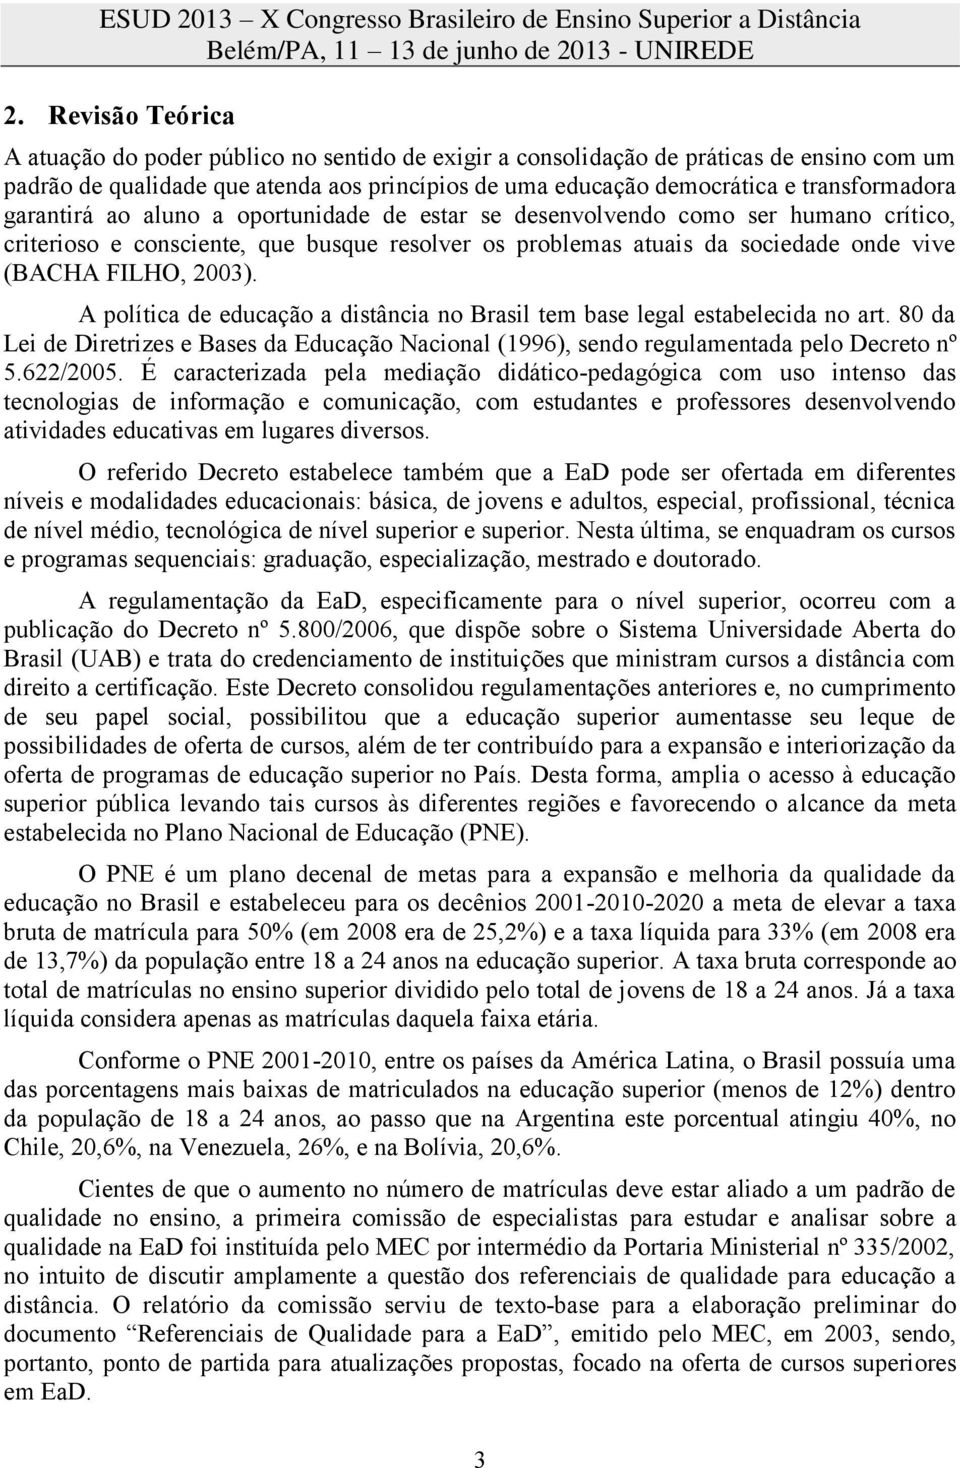 FILHO, 2003). A política de educação a distância no Brasil tem base legal estabelecida no art. 80 da Lei de Diretrizes e Bases da Educação Nacional (1996), sendo regulamentada pelo Decreto nº 5.